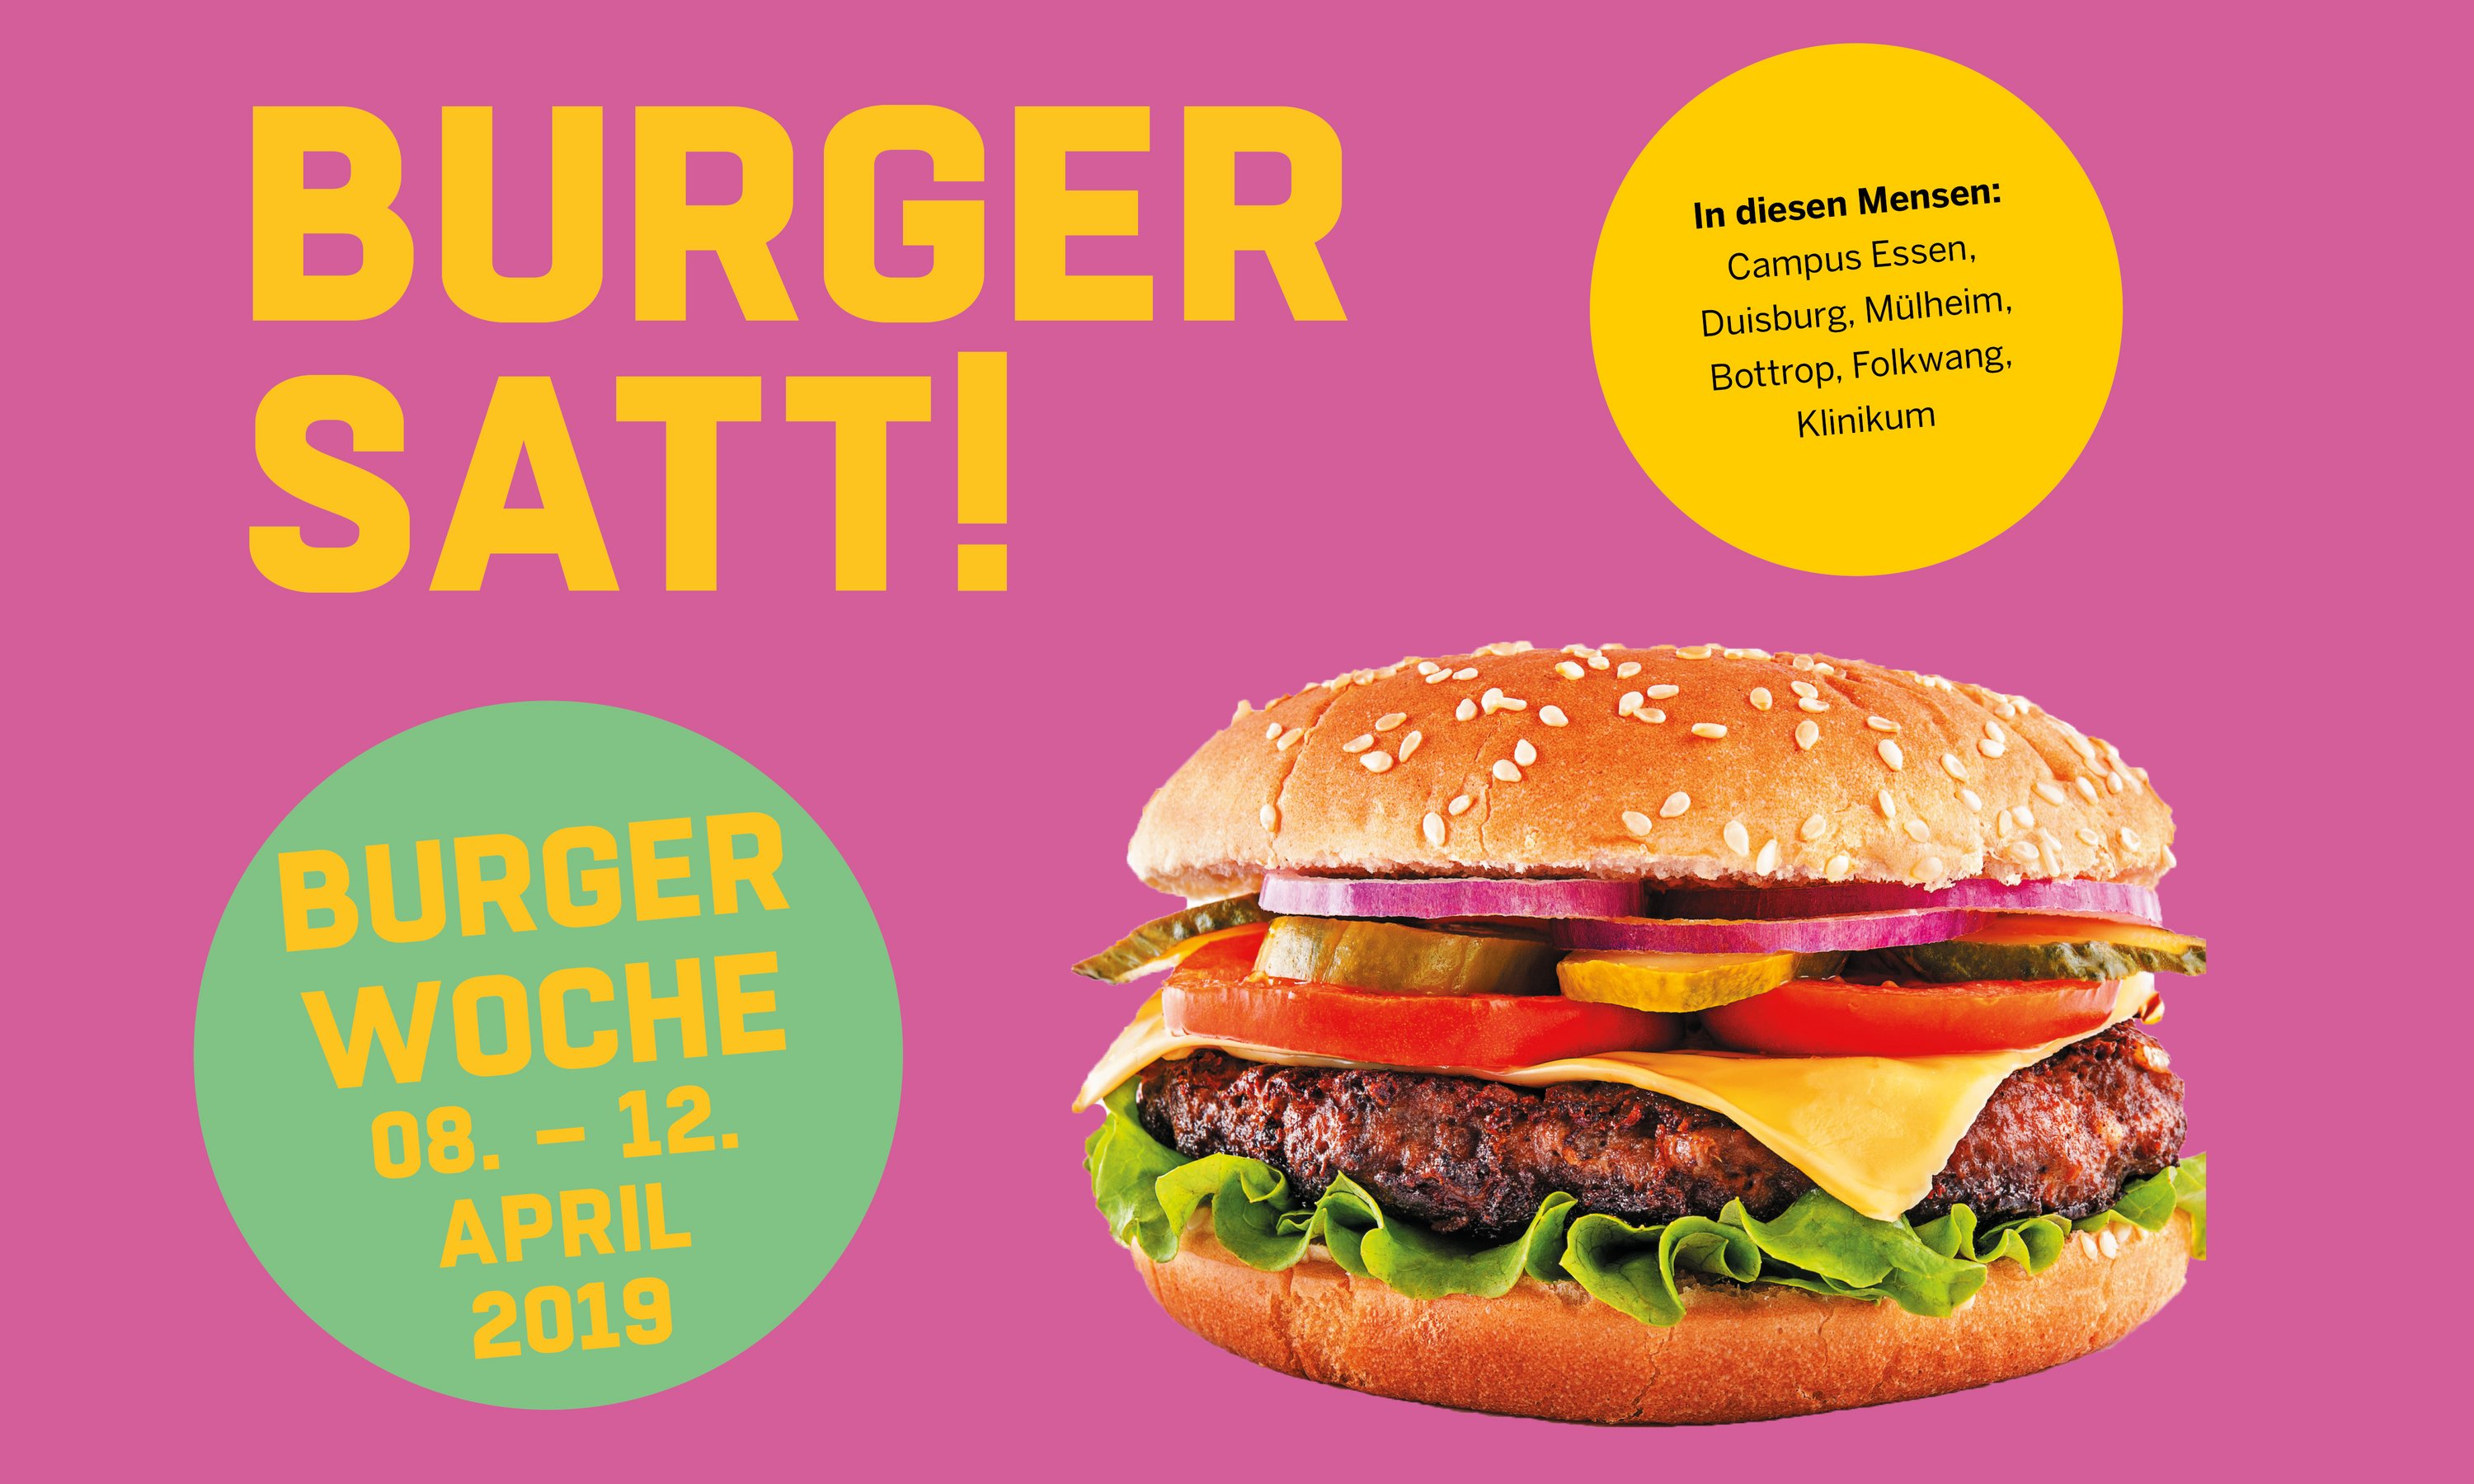 Burger satt! In unseren Mensen servieren wir vom 08.04. - 12.04.2019 köstliche Burger-Kreationen.